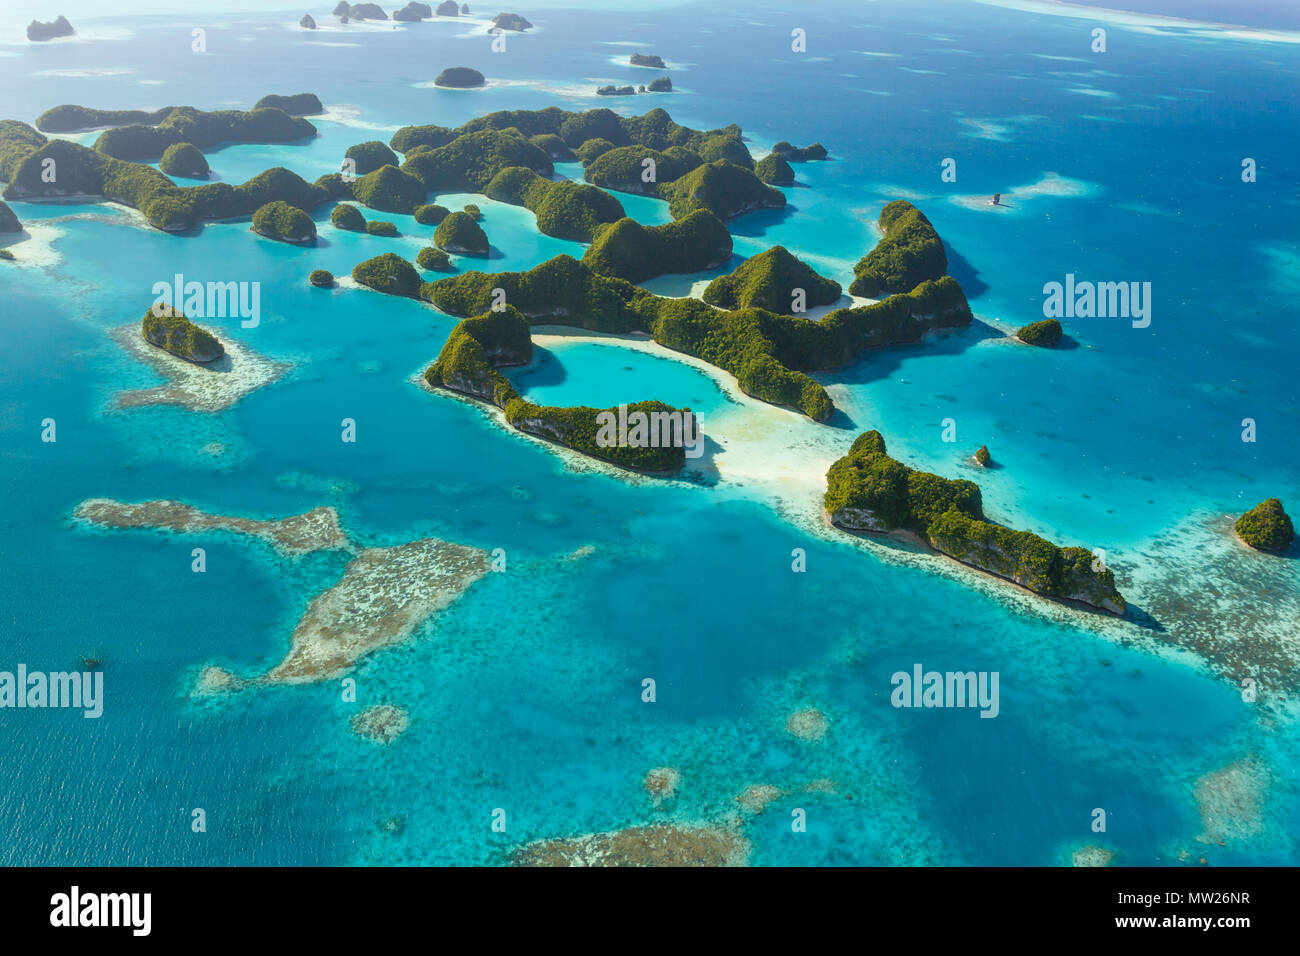 Blick aus der Vogelperspektive auf einsame tropische Inseln, umgeben von Korallenriffen und türkisfarbenem Wasser im südpazifik, 70 Inseln. Stockfoto